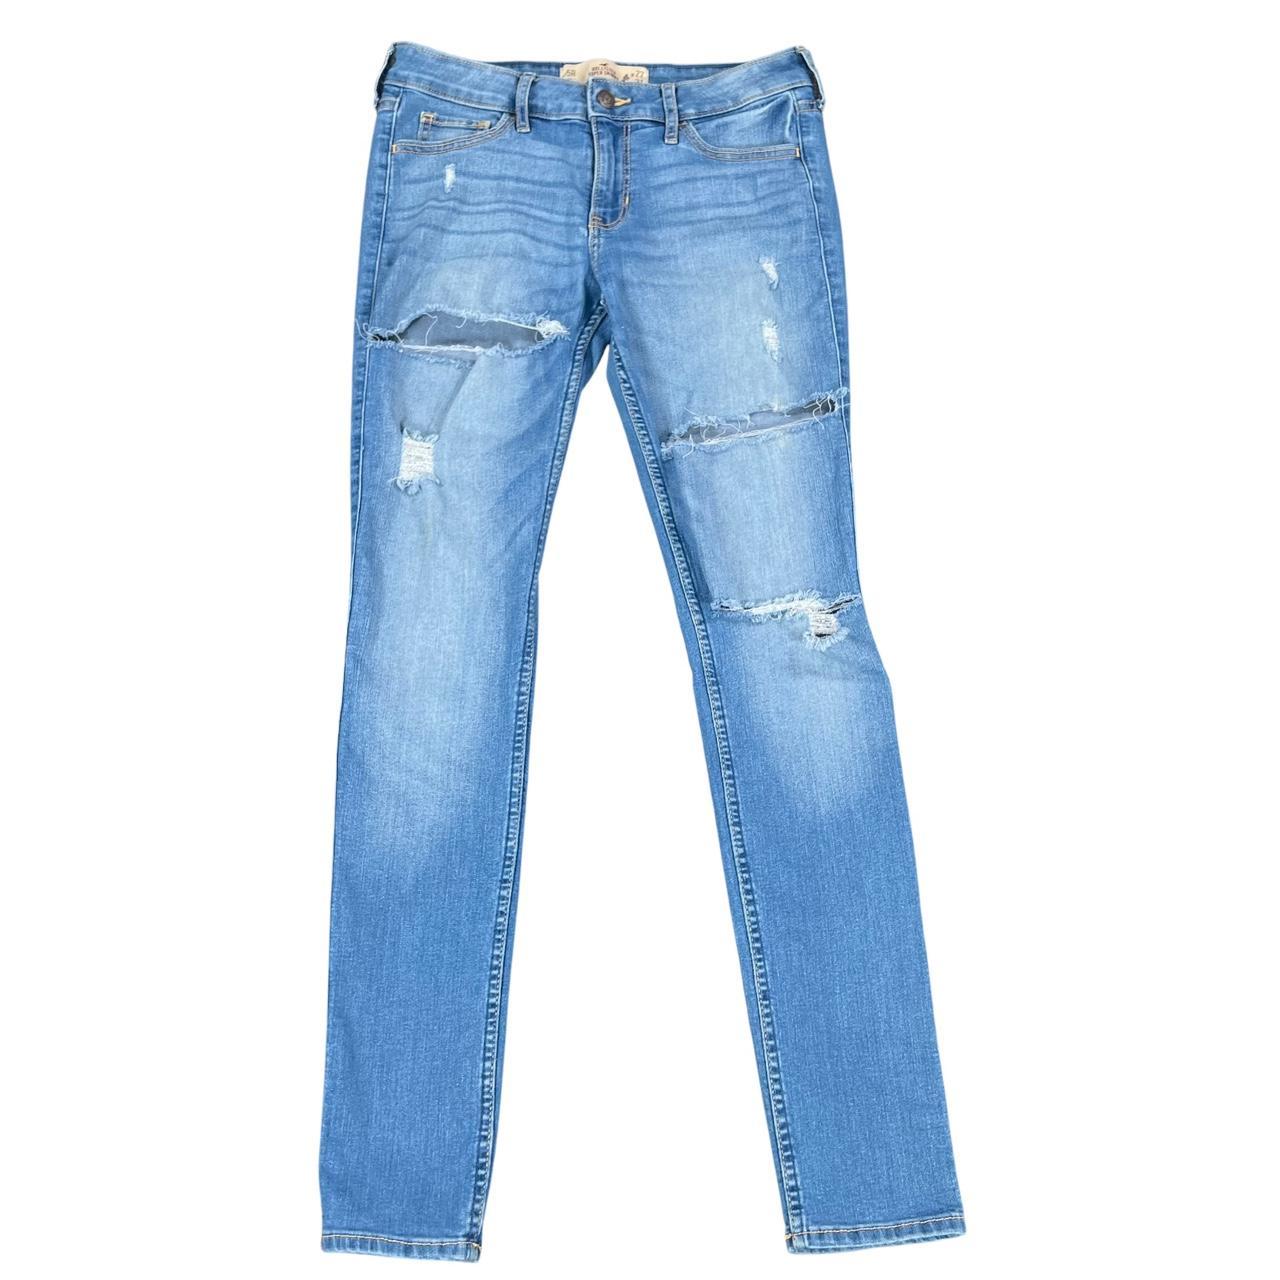 Hollister Super Skinny Jeans 👖 Pre-loved but in - Depop